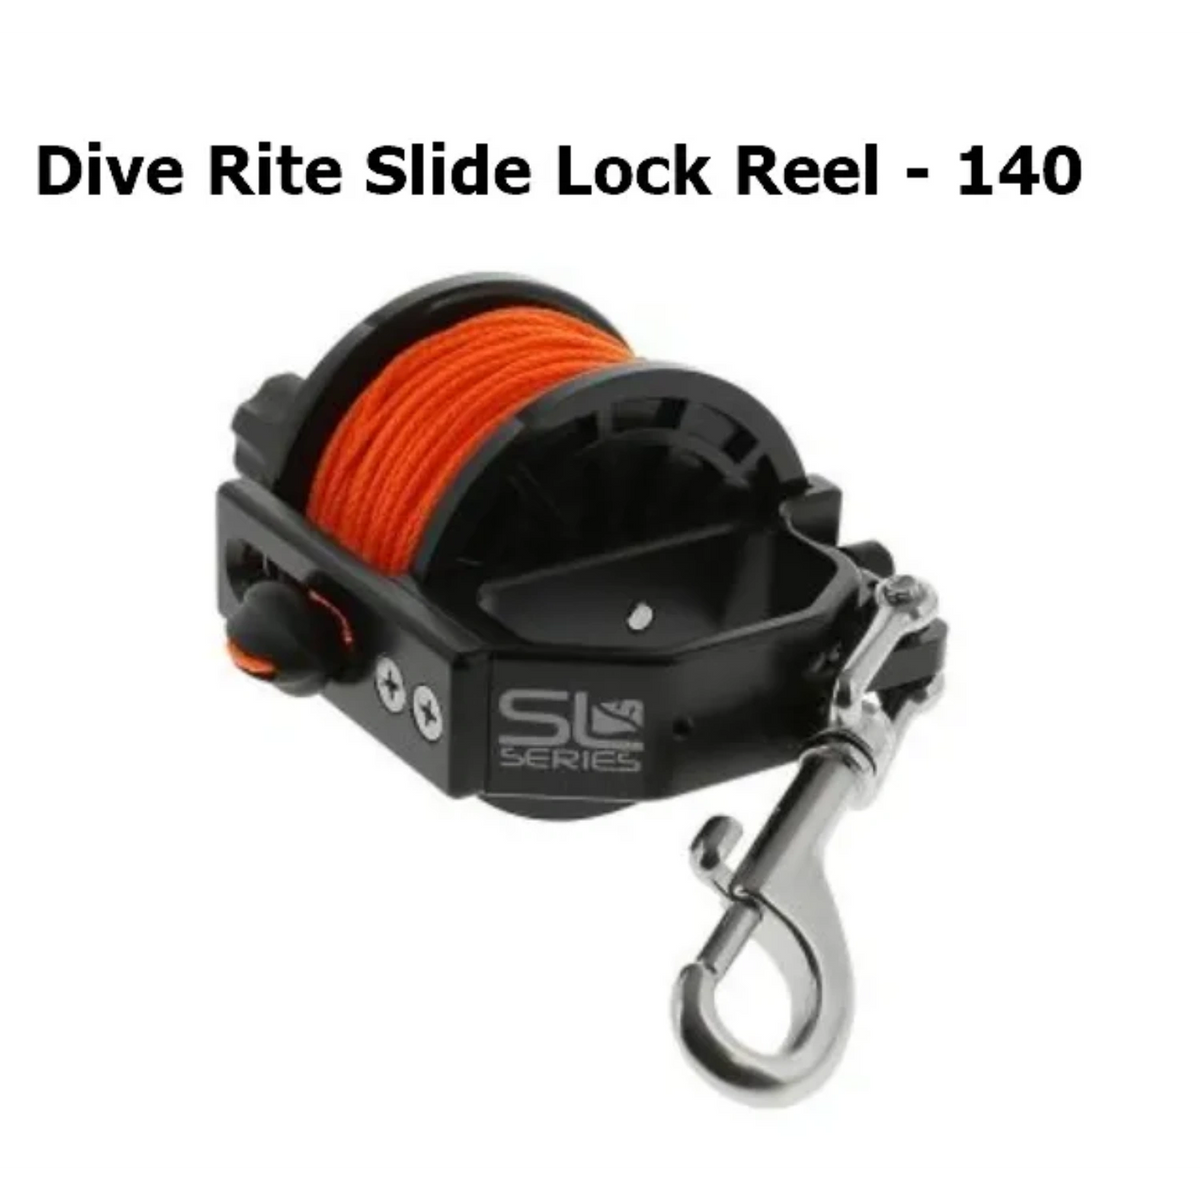 Reel - Dive Rite Slide Lock